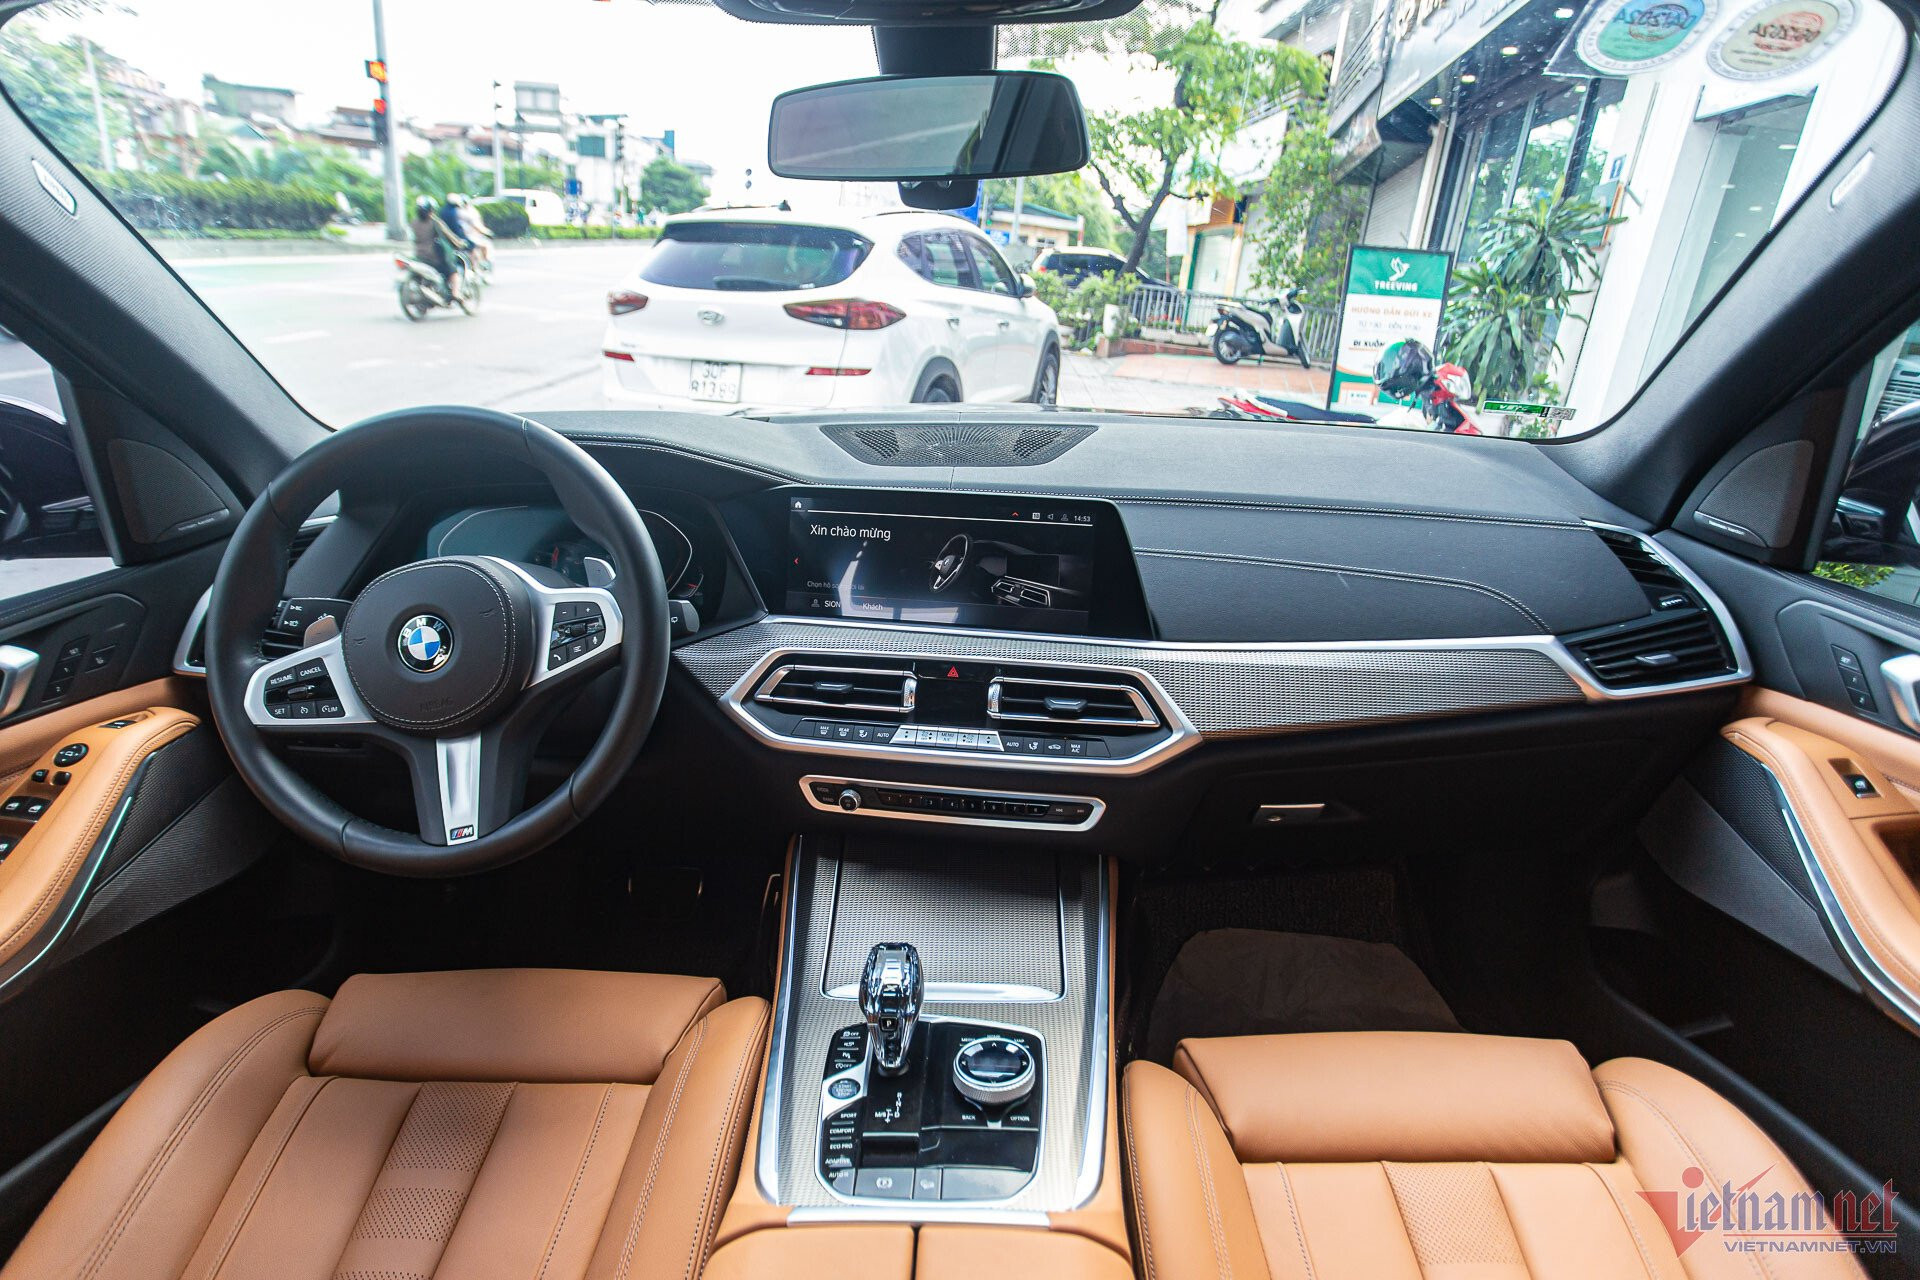 BMW X5 đời 2020 mới lăn bánh 100 km, chủ xe bán lỗ hơn 1 tỷ đồng - 10